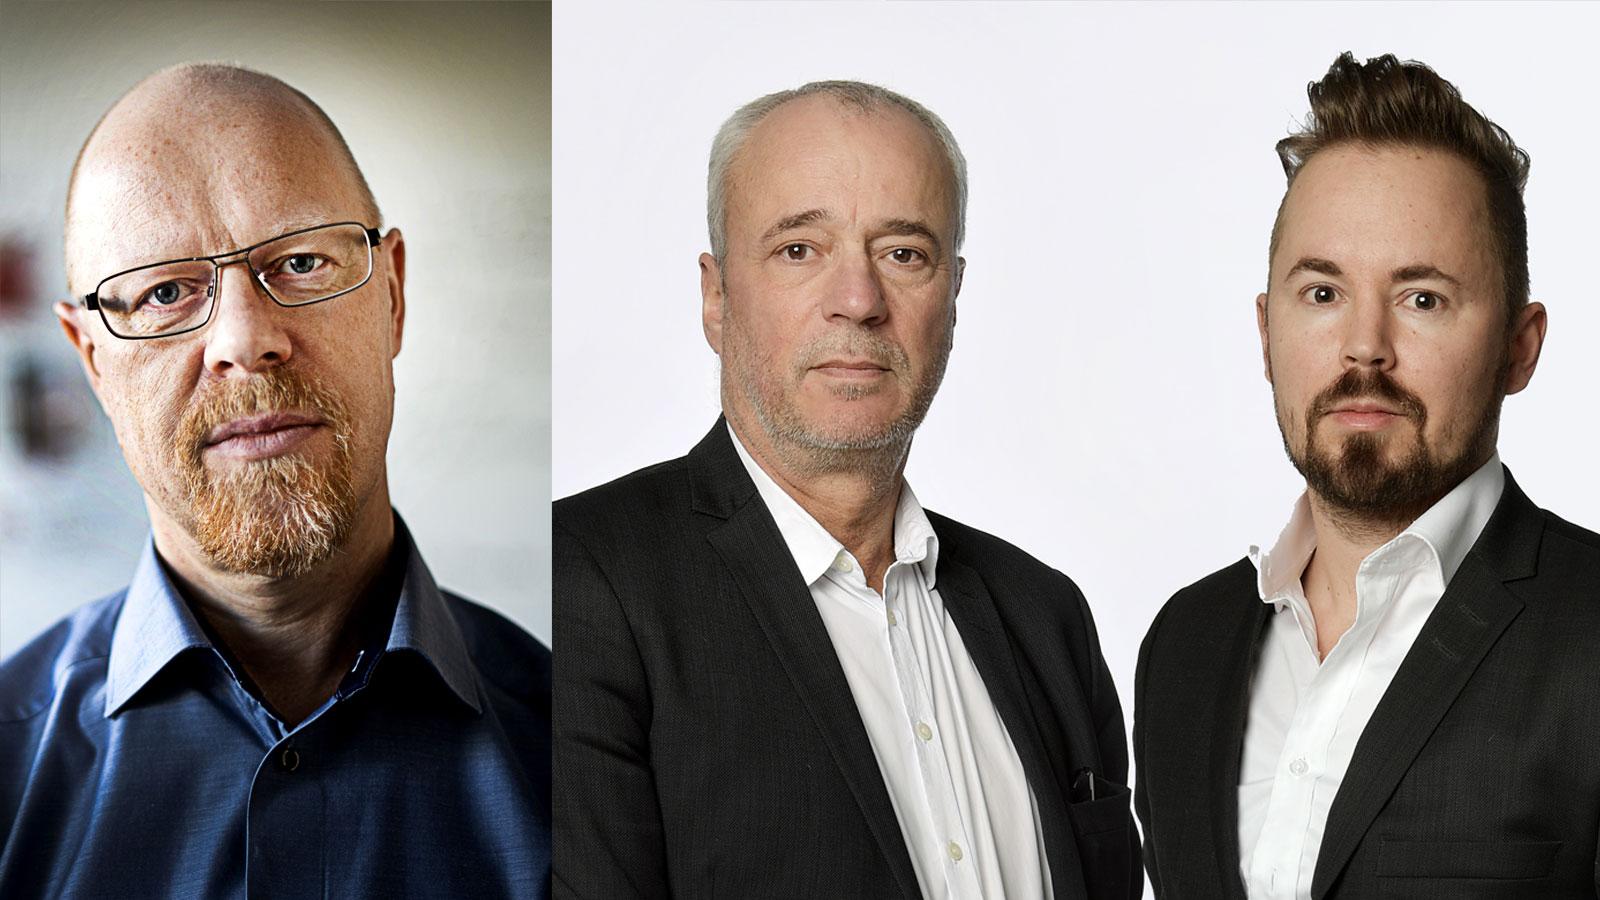 Anders Johansson, Richard Aschberg och Mattias Sandberg prisas för granskningarna ”Facktopparna”  och ”Maktens kvitton”.